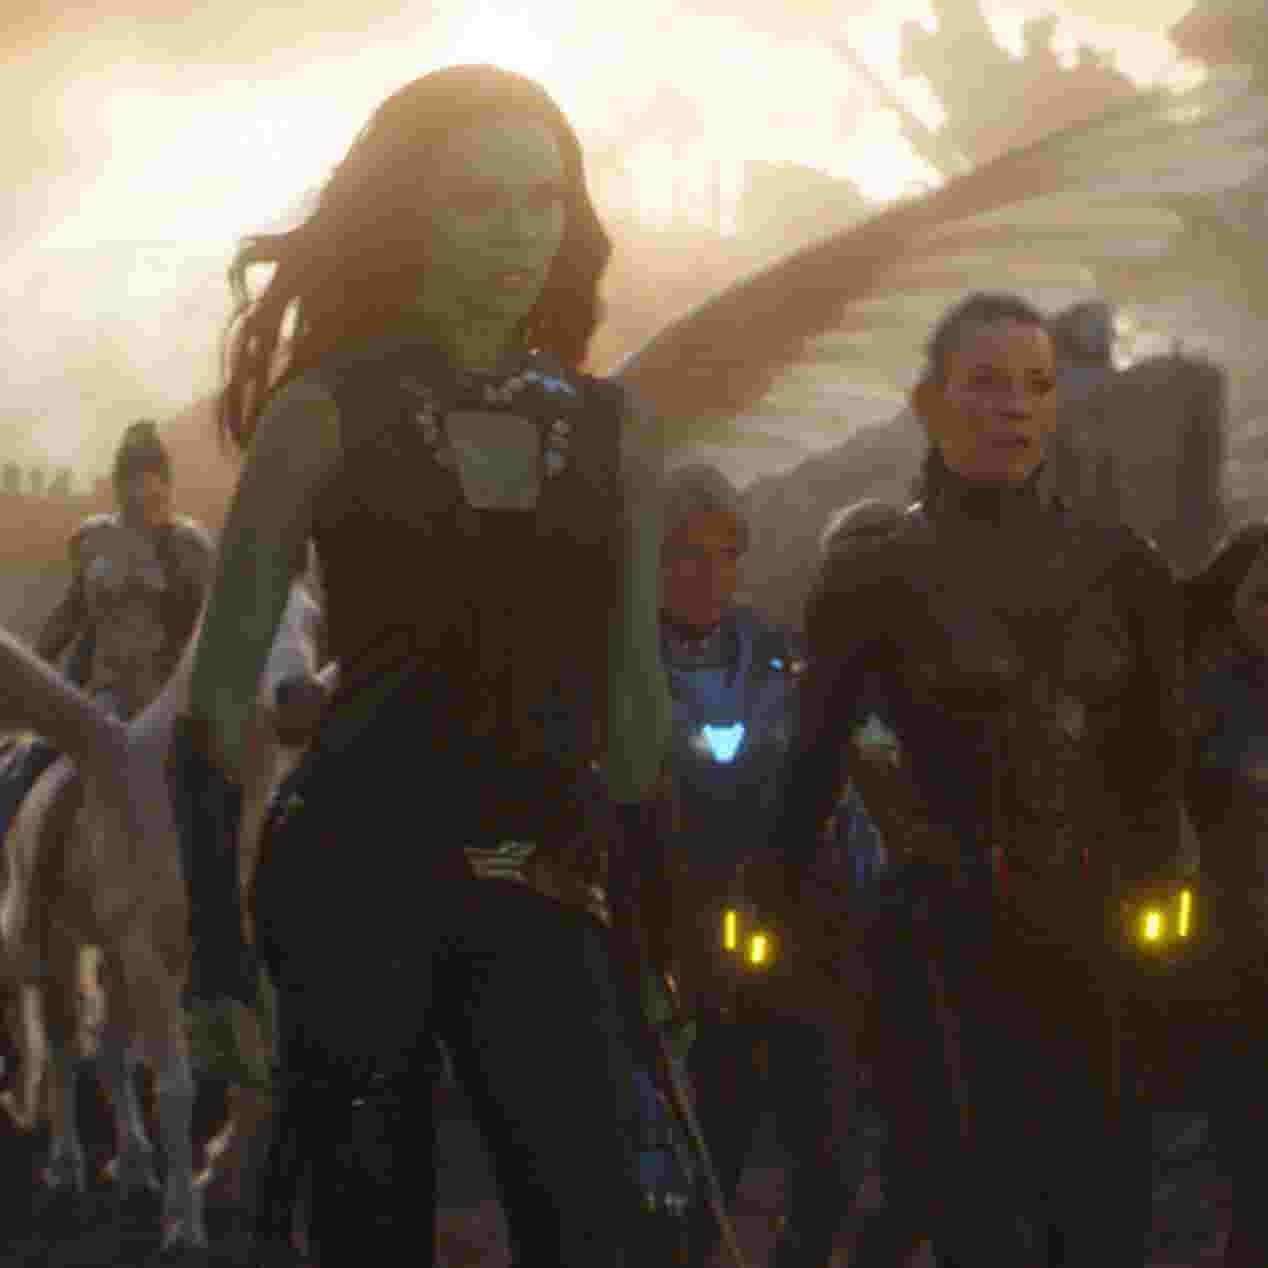 Marvel Just Retconned Avengers: Endgame's Cap & Nat Scene